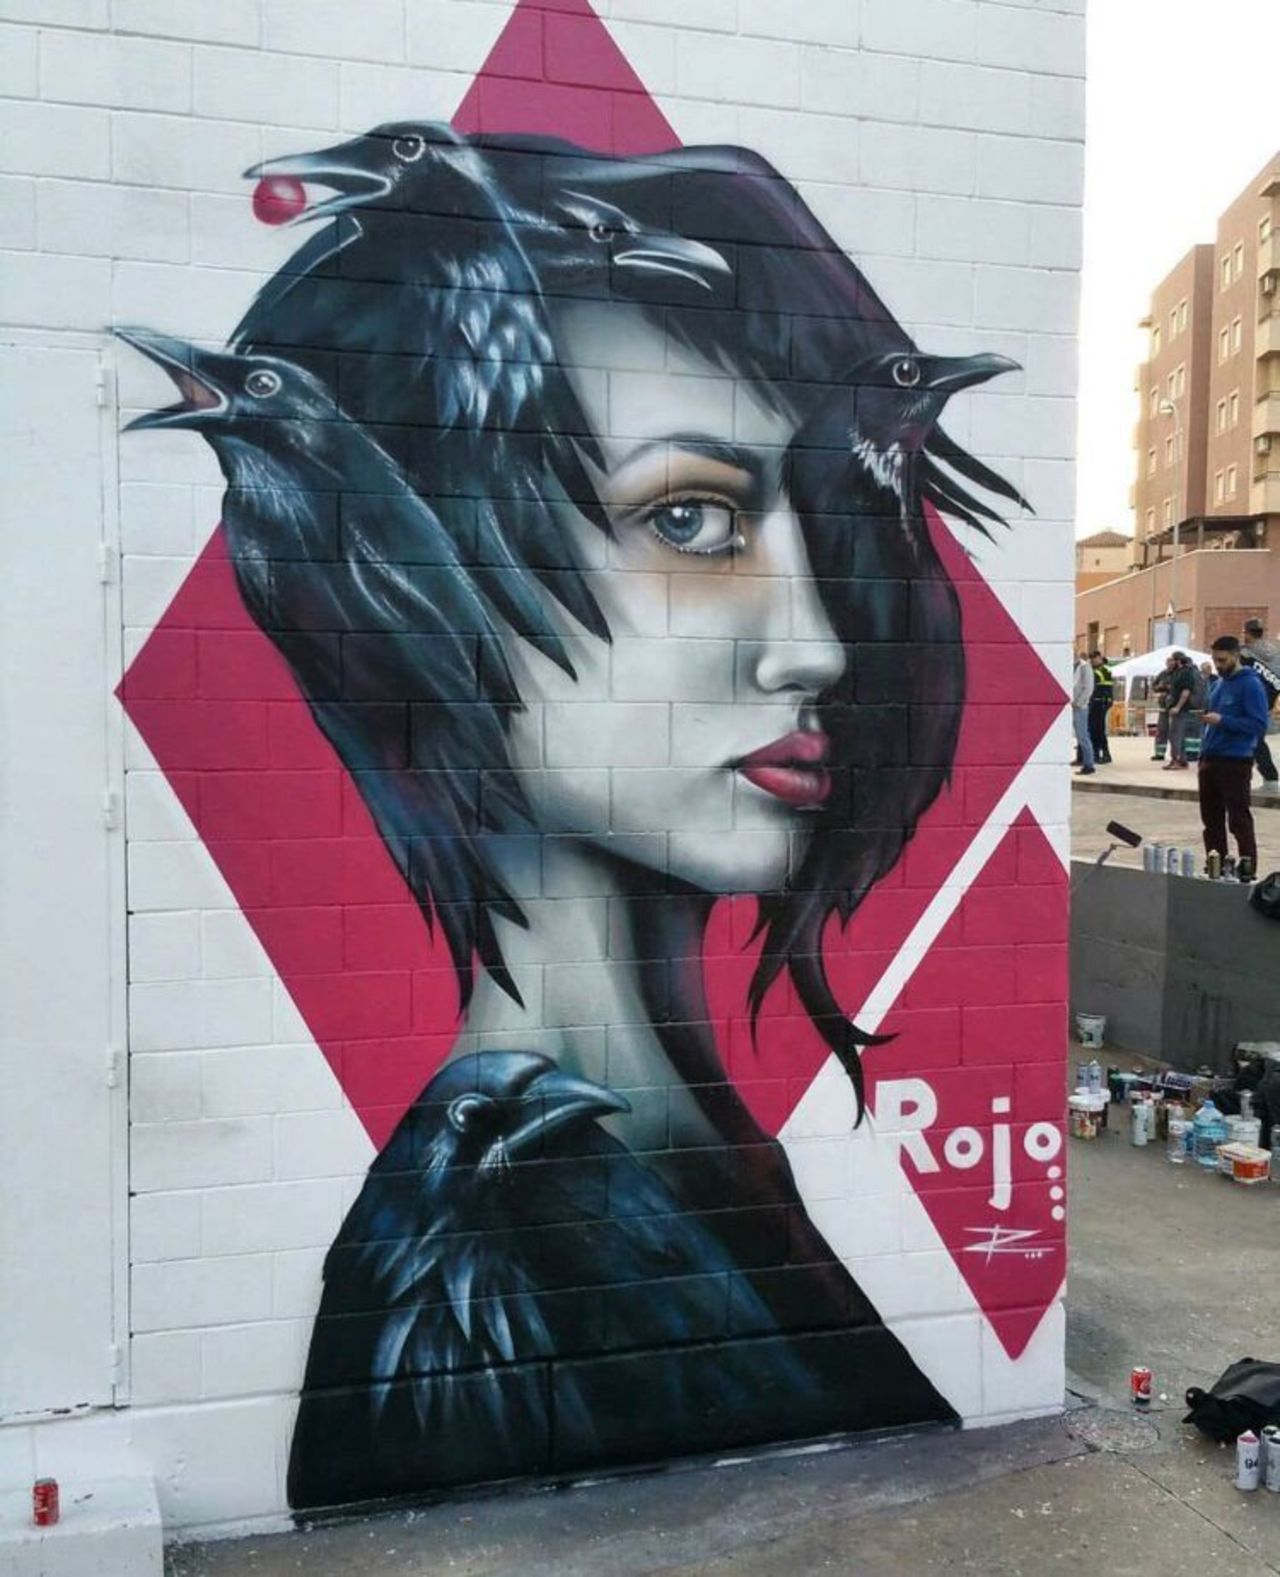 New work by Rojo #streetart #mural #graffiti #art https://t.co/B8ShxTDuWQ